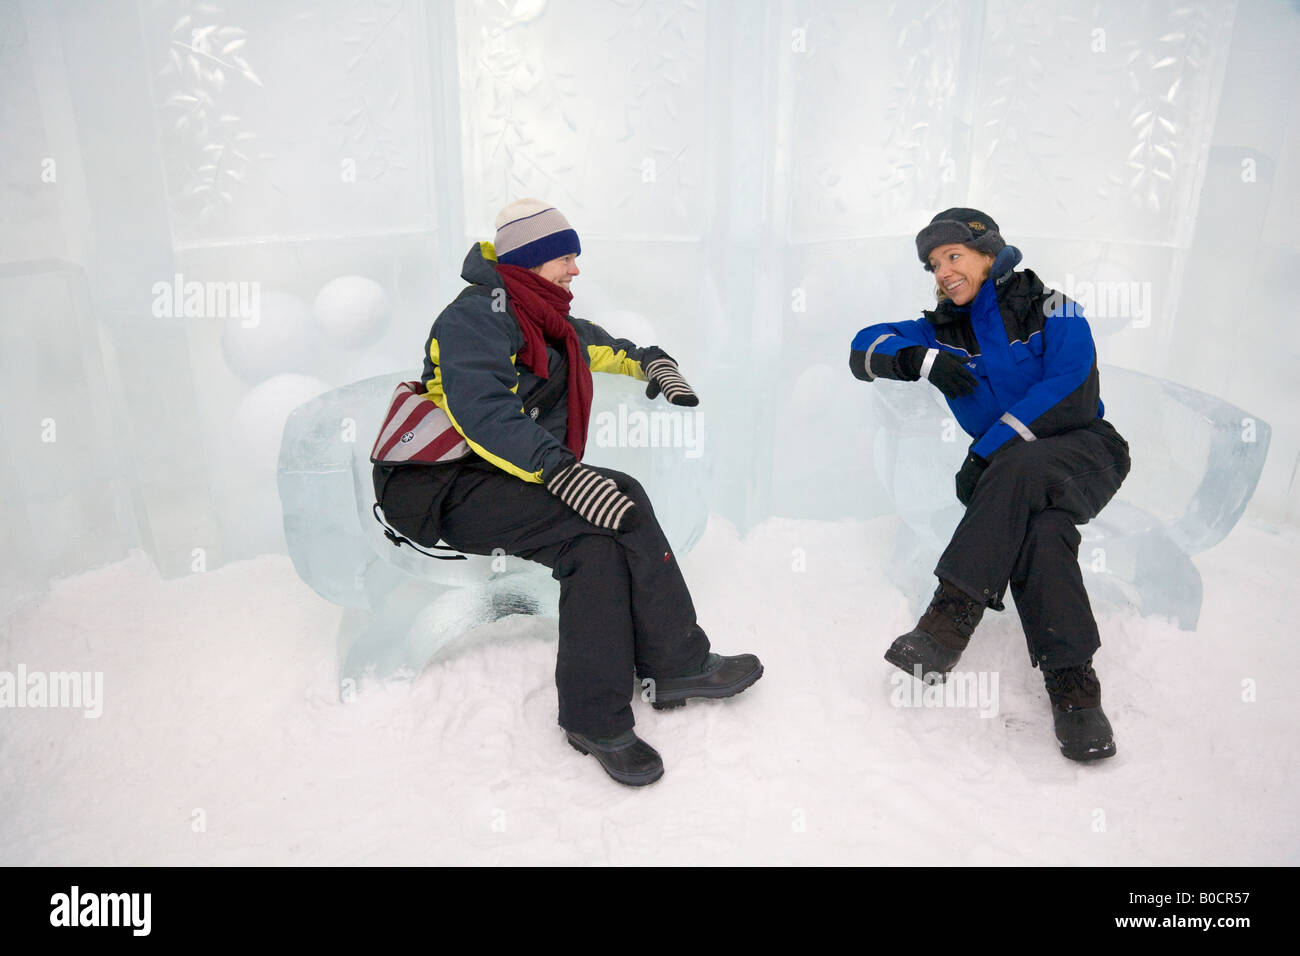 Deux femmes sont assises sur des fauteuils en glace à l'intérieur de l'icehotel Jukkasjarvi dans le nord de la Suède Banque D'Images